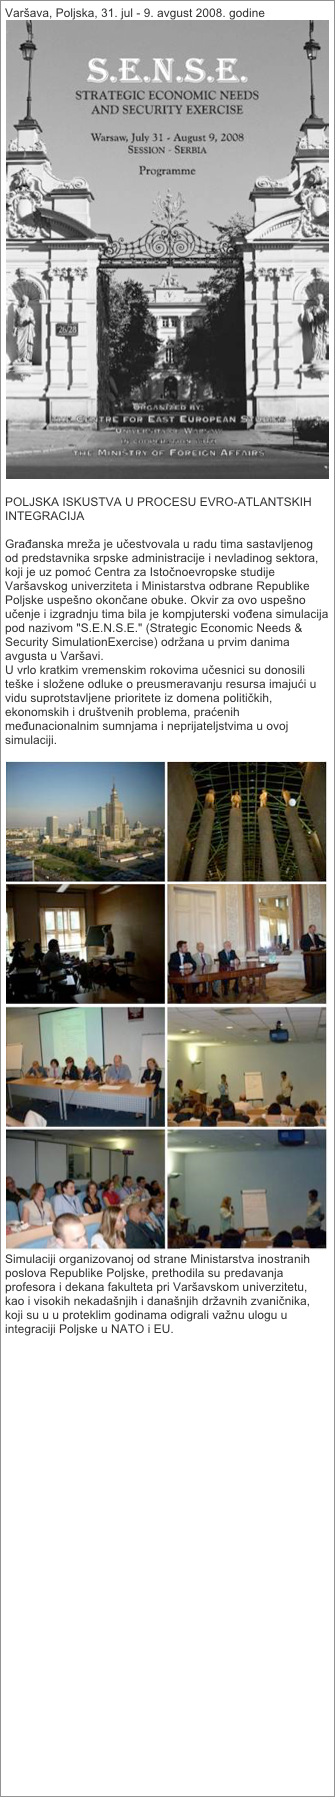 Varšava, Poljska, 31. jul - 9. avgust 2008. godine
￼

POLJSKA ISKUSTVA U PROCESU EVRO-ATLANTSKIH INTEGRACIJA

Građanska mreža je učestvovala u radu tima sastavljenog od predstavnika srpske administracije i nevladinog sektora, koji je uz pomoć Centra za Istočnoevropske studije Varšavskog univerziteta i Ministarstva odbrane Republike Poljske uspešno okončane obuke. Okvir za ovo uspešno učenje i izgradnju tima bila je kompjuterski vođena simulacija pod nazivom "S.E.N.S.E." (Strategic Economic Needs & Security SimulationExercise) održana u prvim danima avgusta u Varšavi.
U vrlo kratkim vremenskim rokovima učesnici su donosili teške i složene odluke o preusmeravanju resursa imajući u vidu suprotstavljene prioritete iz domena političkih, ekonomskih i društvenih problema, praćenih međunacionalnim sumnjama i neprijateljstvima u ovoj simulaciji.
 
￼
Simulaciji organizovanoj od strane Ministarstva inostranih poslova Republike Poljske, prethodila su predavanja profesora i dekana fakulteta pri Varšavskom univerzitetu, kao i visokih nekadašnjih i današnjih državnih zvaničnika, koji su u u proteklim godinama odigrali važnu ulogu u integraciji Poljske u NATO i EU.

